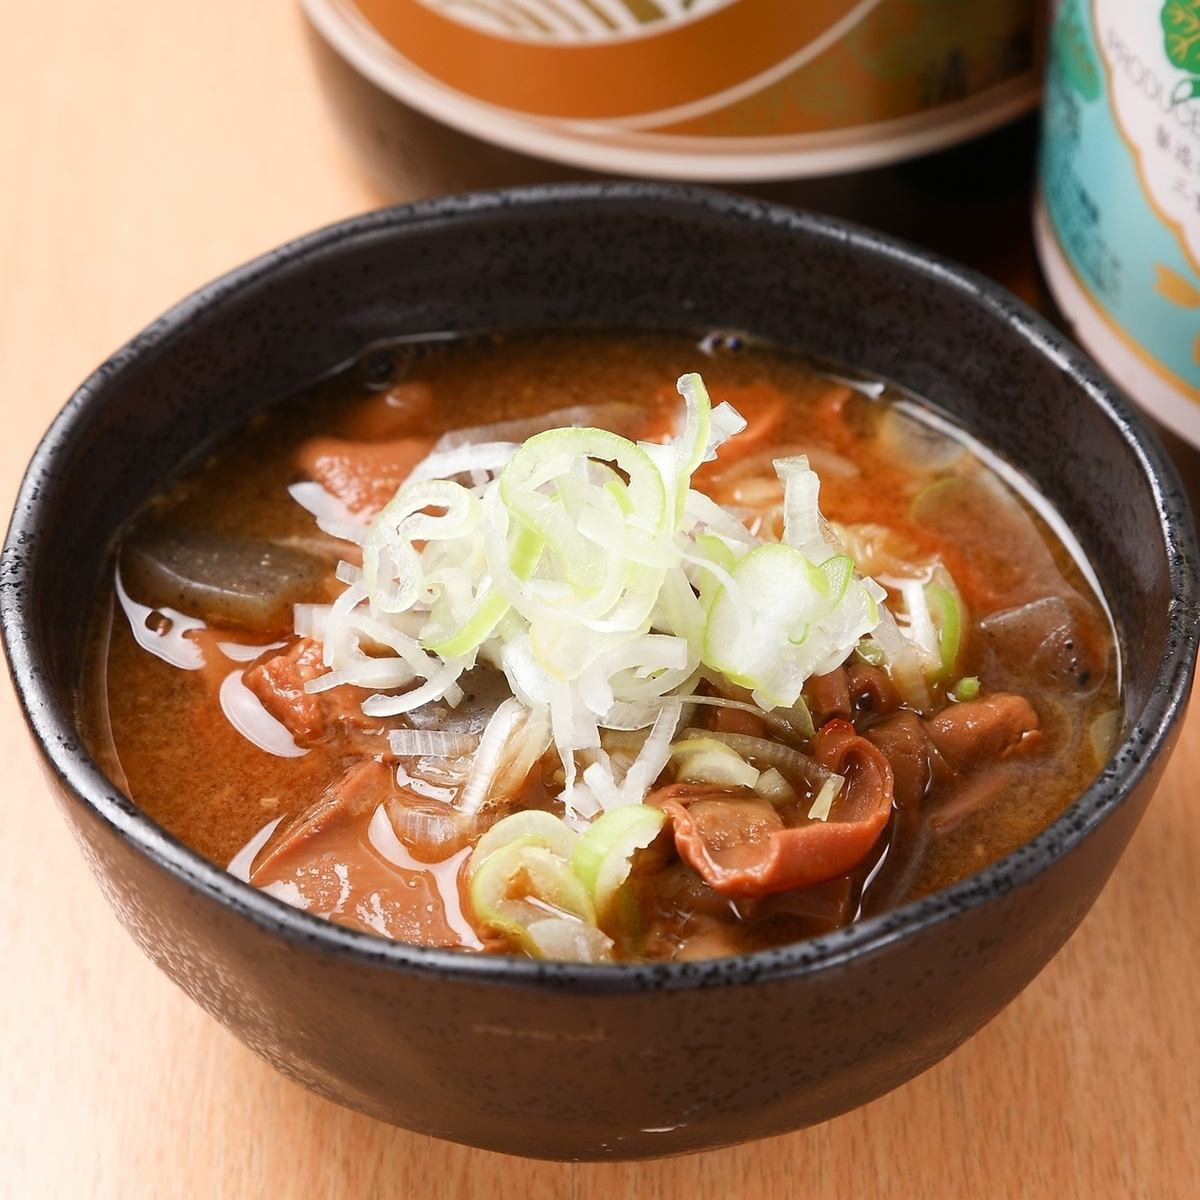 【北広島駅から徒歩3分】もつ煮をメインに様々なジャンルの料理をご提供